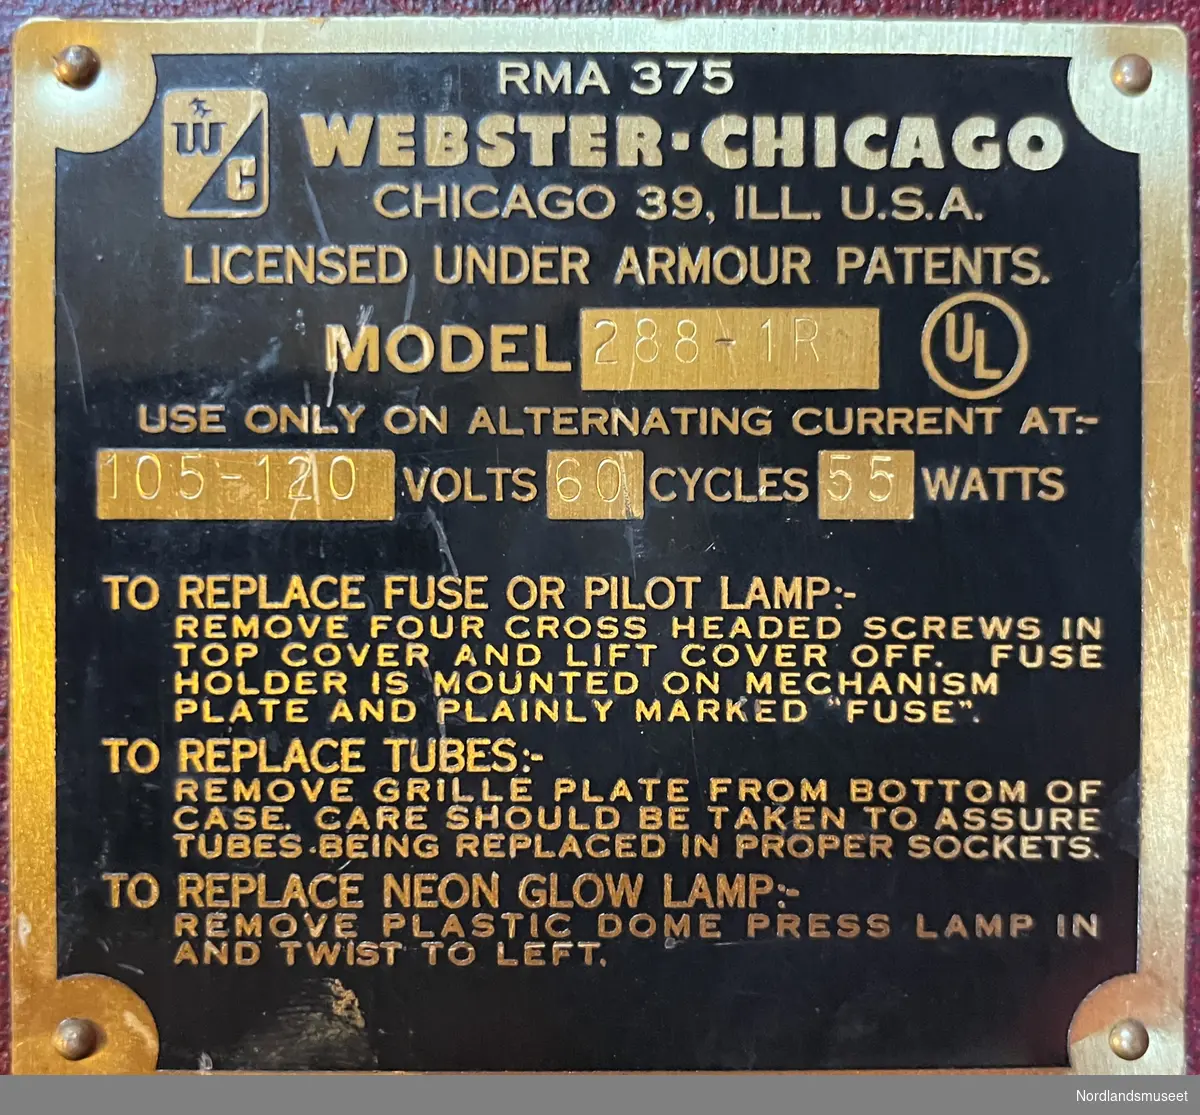 Lyd-opptaker/avspiller, som benytter jerntråd som opptaks/avspillings-medium.
Produsent: Webster-Chicago, Chicago 39, Ill. U.S.A
Rør: 6SC7, 6V6GT, 6SC7, 6SN7GT, 6X5GT
Produktet var i utgangspunktet for 105-120 Volt vekselspenning, 60 Hz, men ble tilpasset norsk standard på 220Volt 50Hz